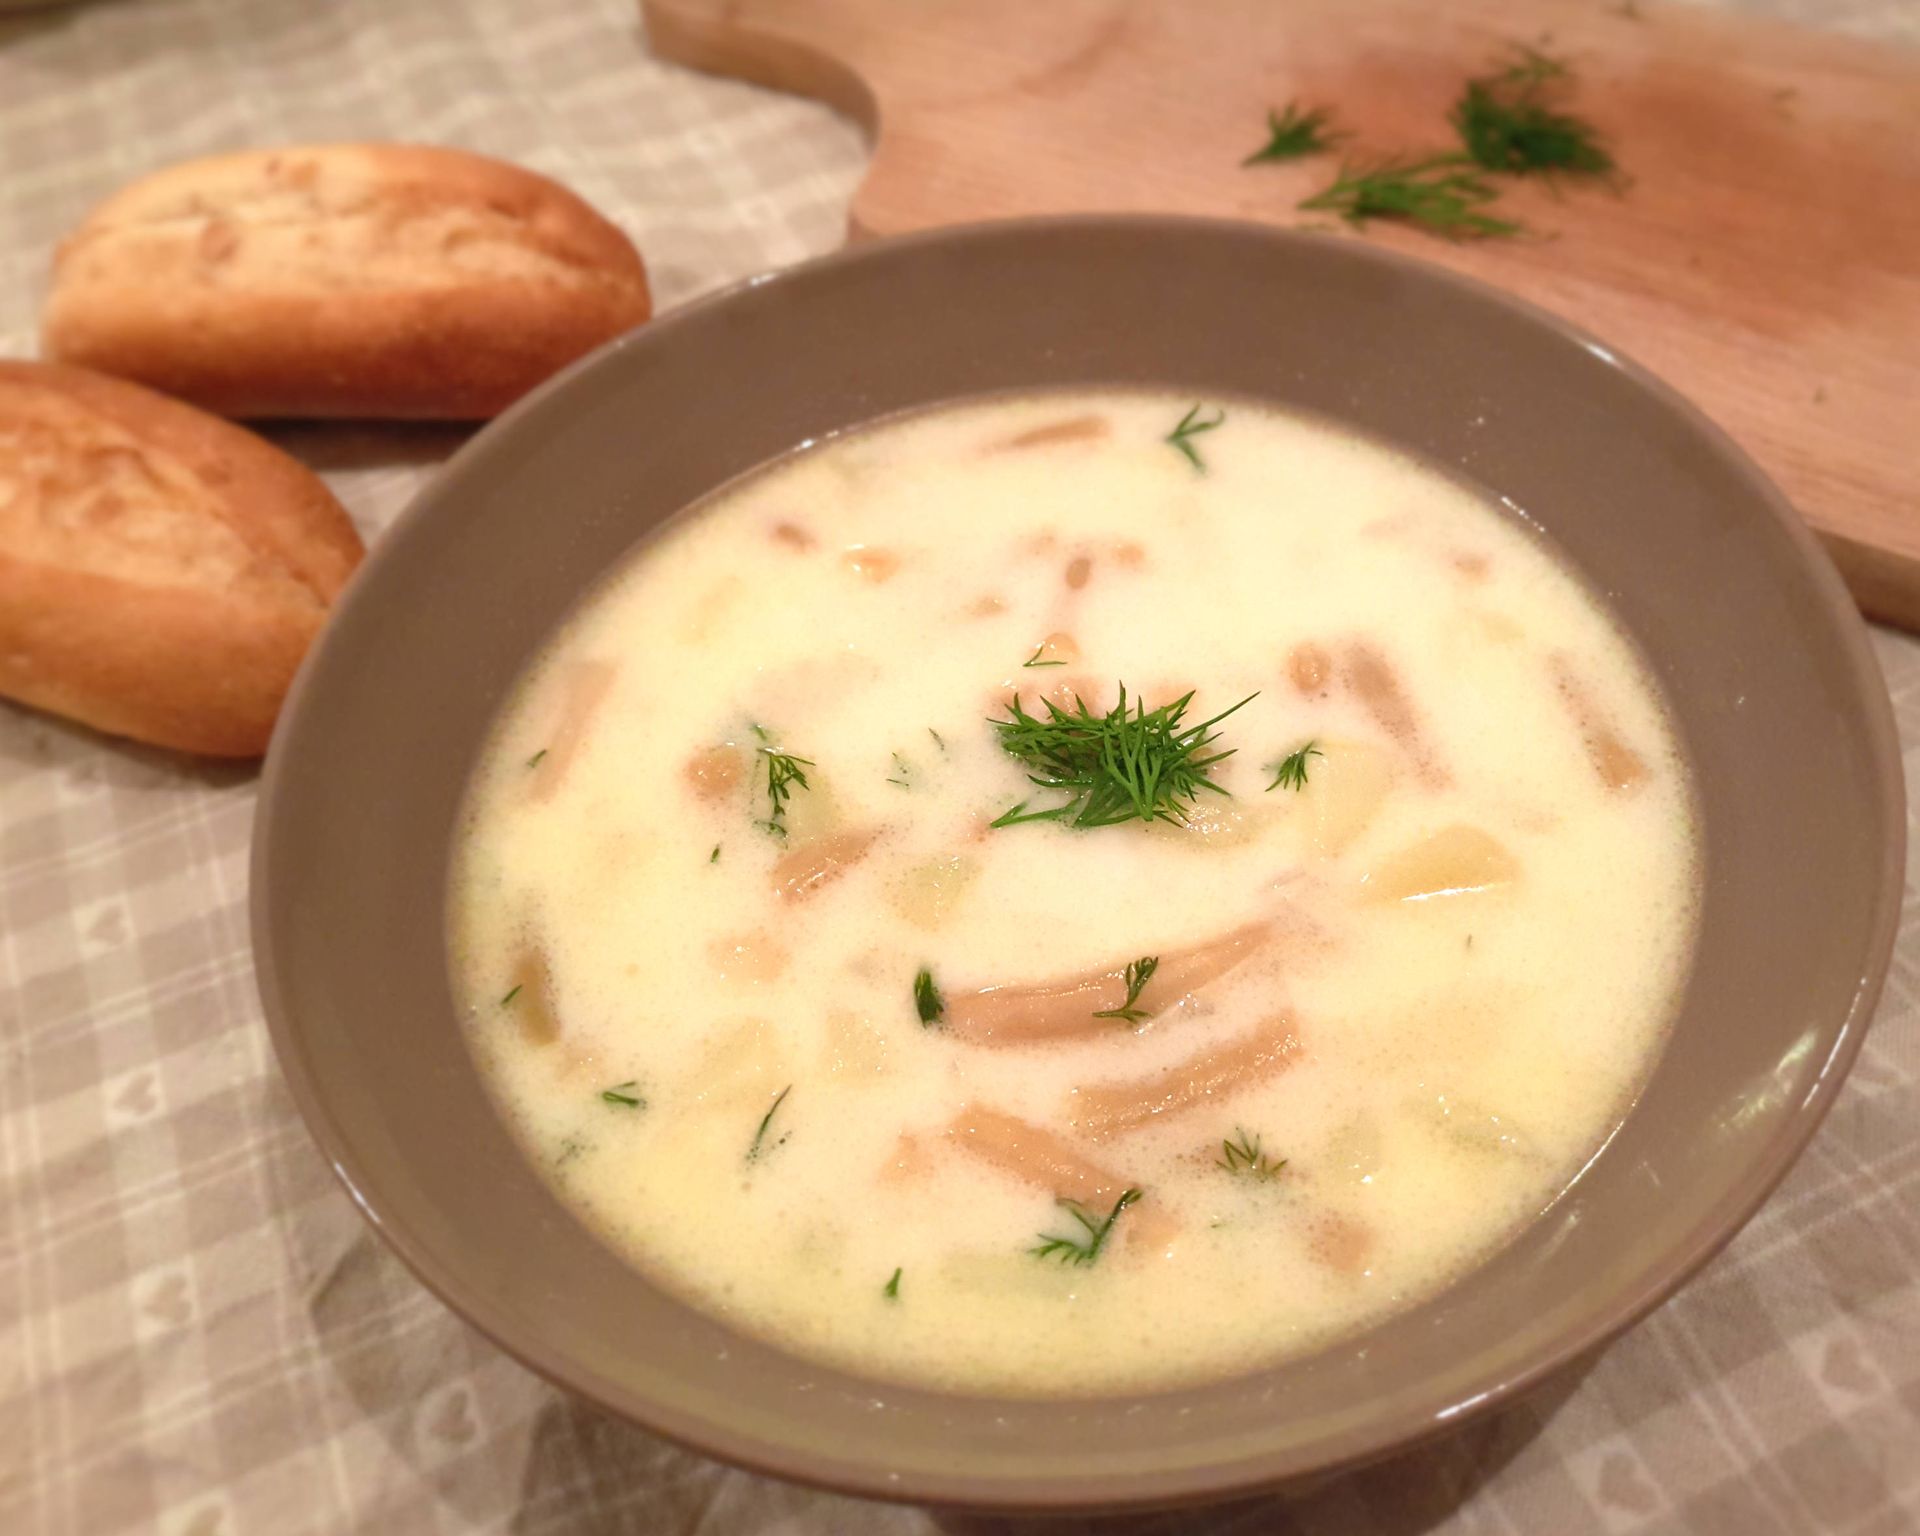 Fazuľková polievka smotanová so zemiakmi a kôprom. Recept originálny domáci nakyslo.